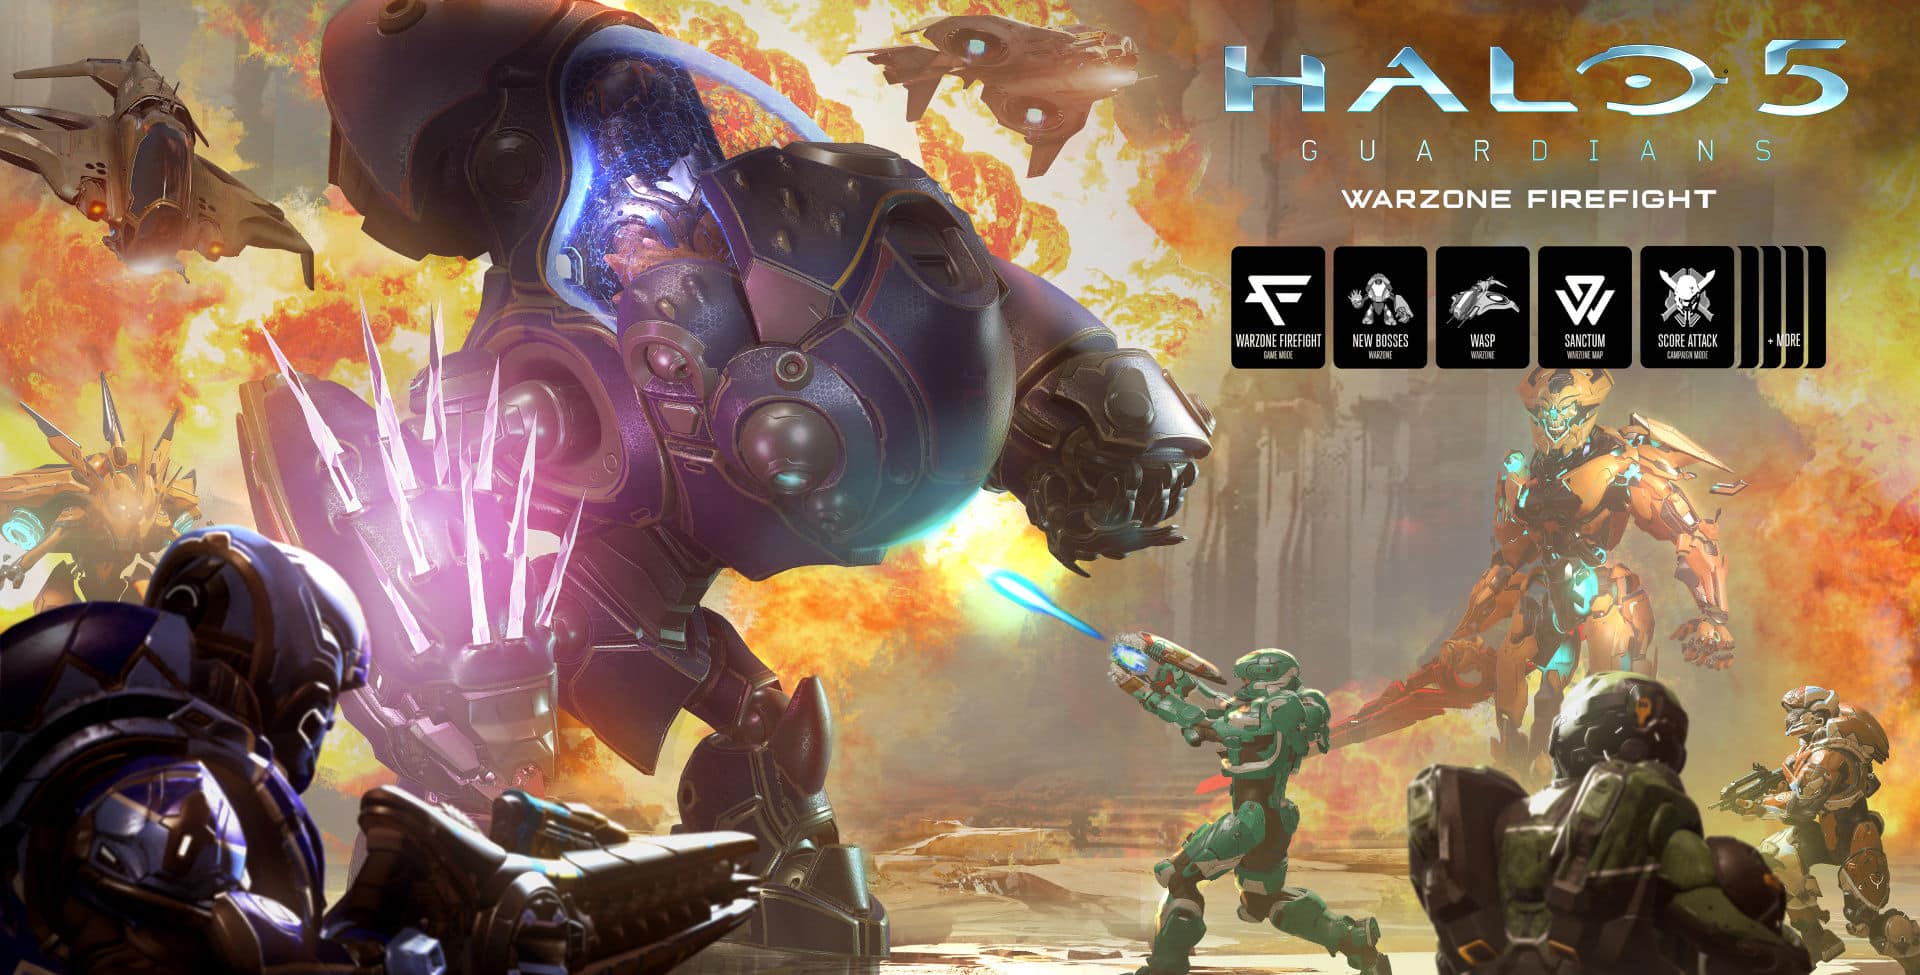 Halo 5 Score Attack & Warzone Firefight Achievements Guide